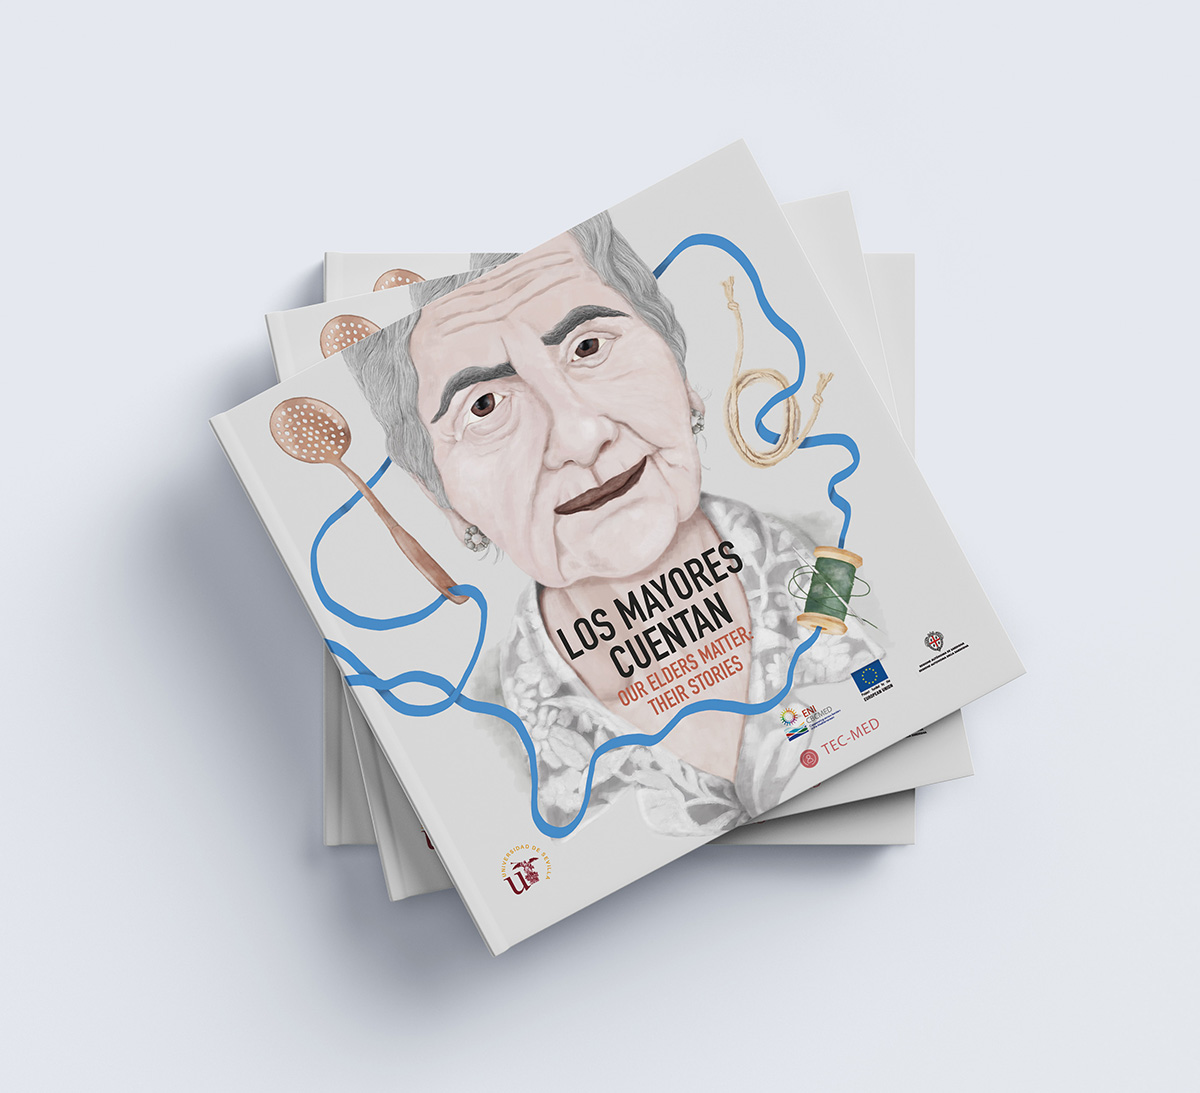 Ilustración de portada para cuentos de adultos con retrato de anciana